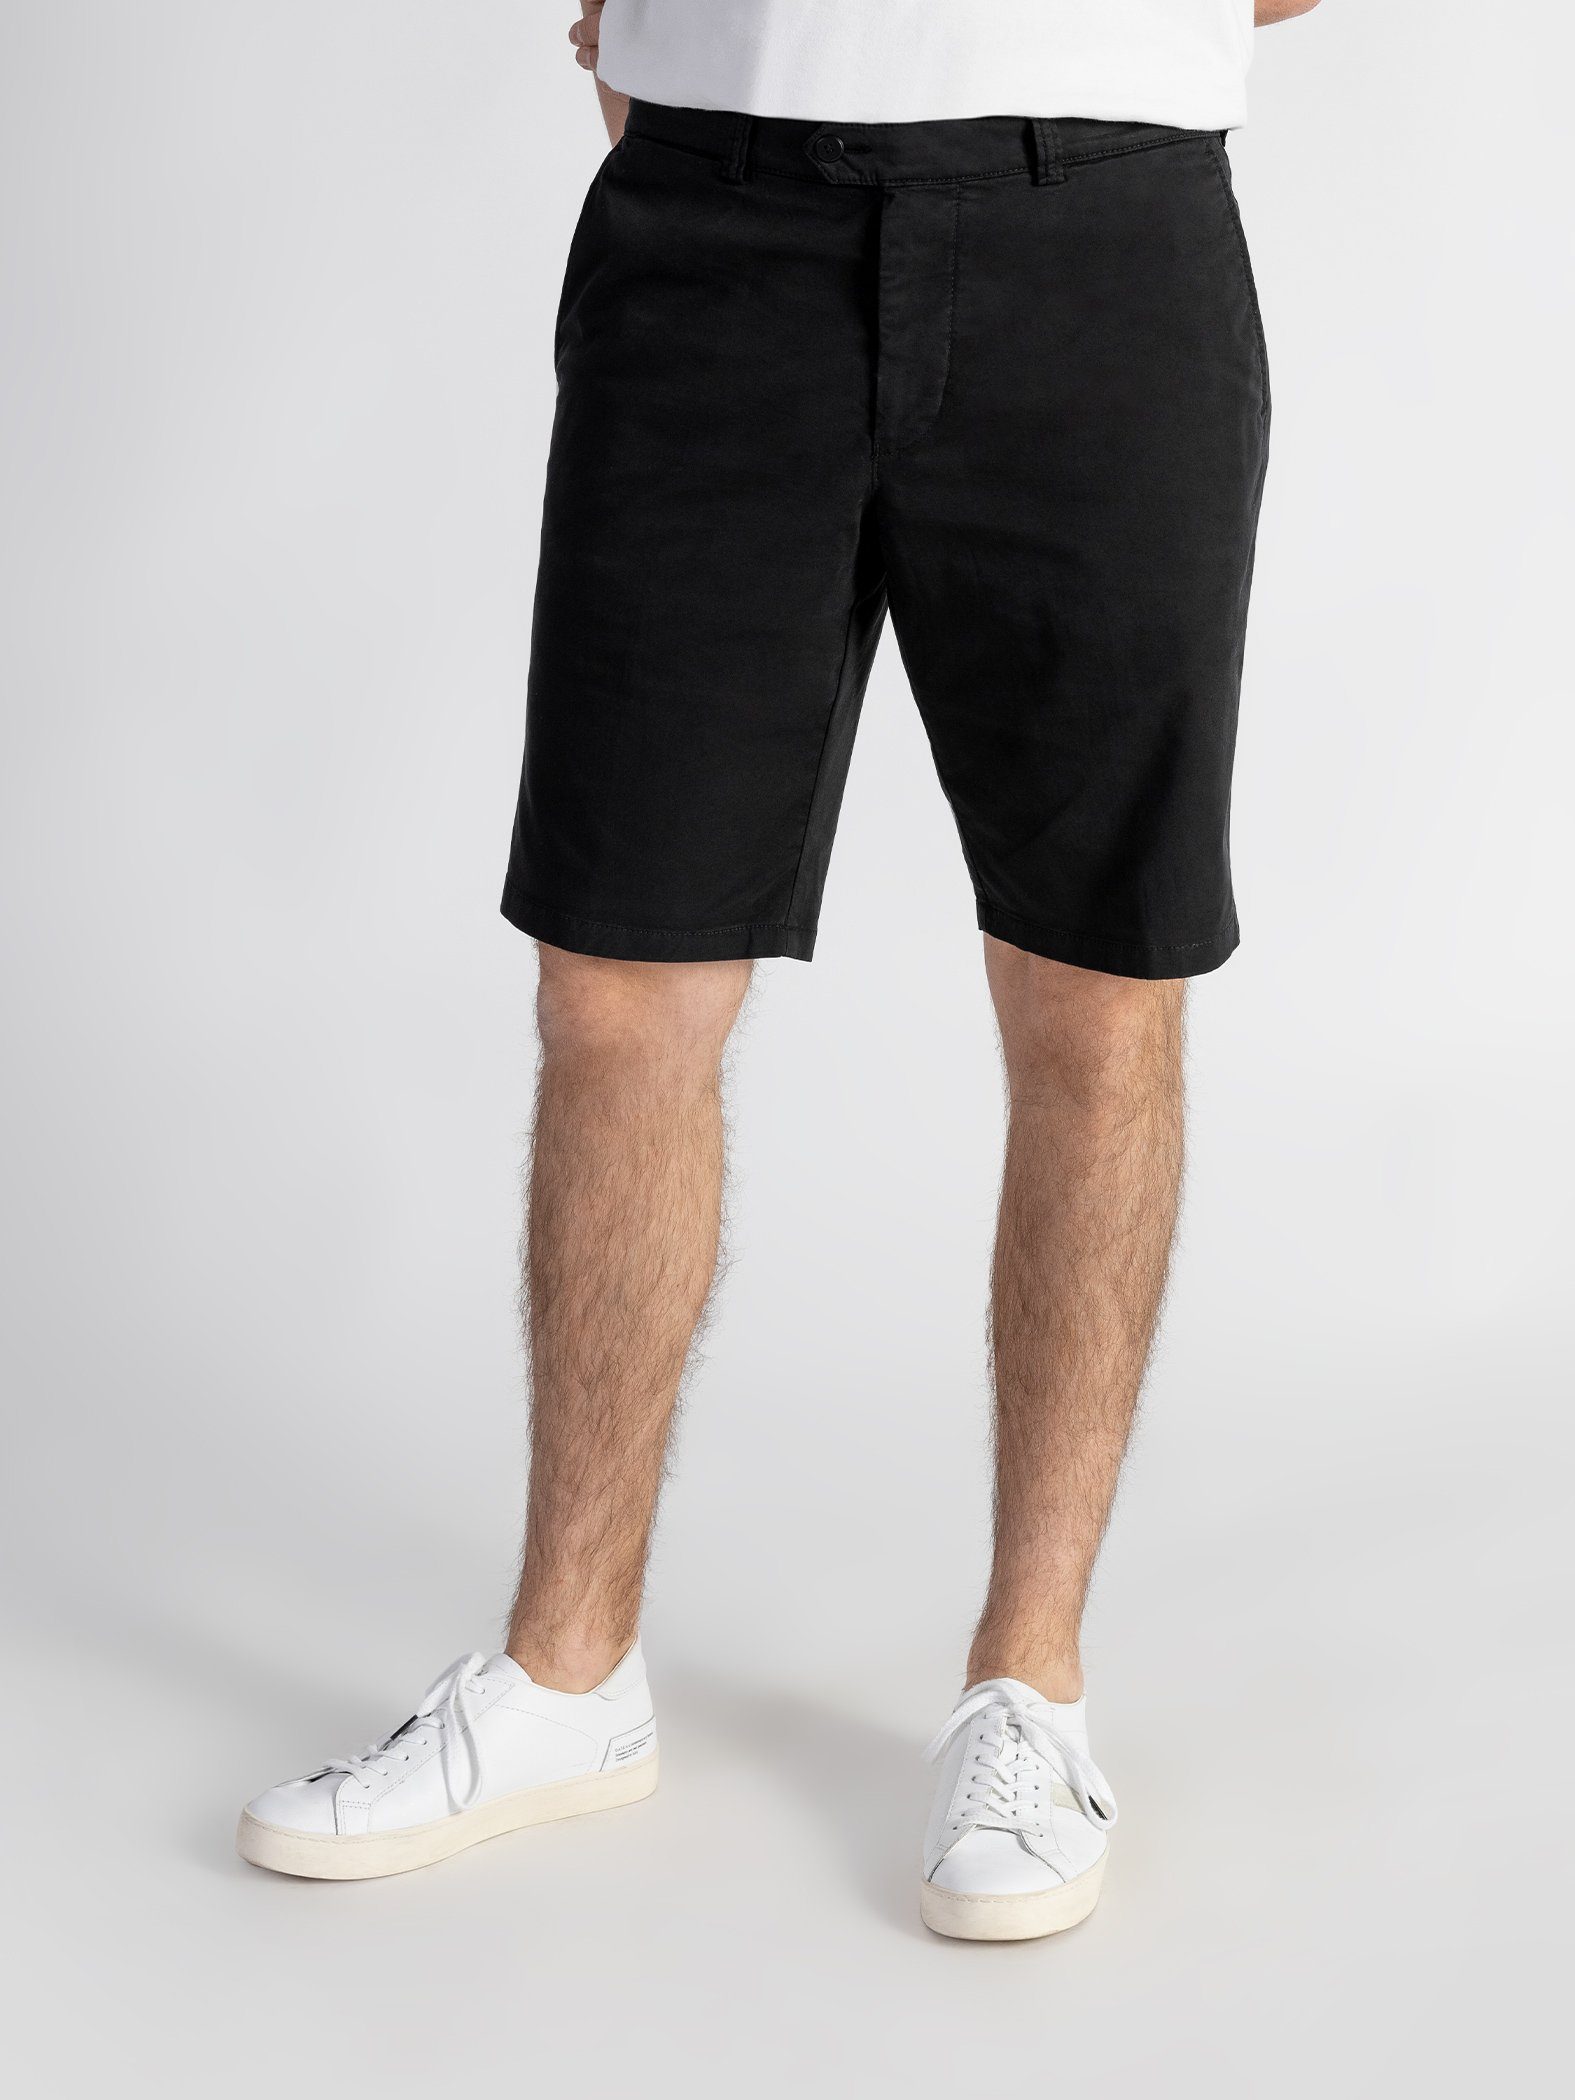 TwoMates Shorts Shorts mit elastischem Bund, Farbauswahl, GOTS-zertifiziert Schwarz | Sportshorts